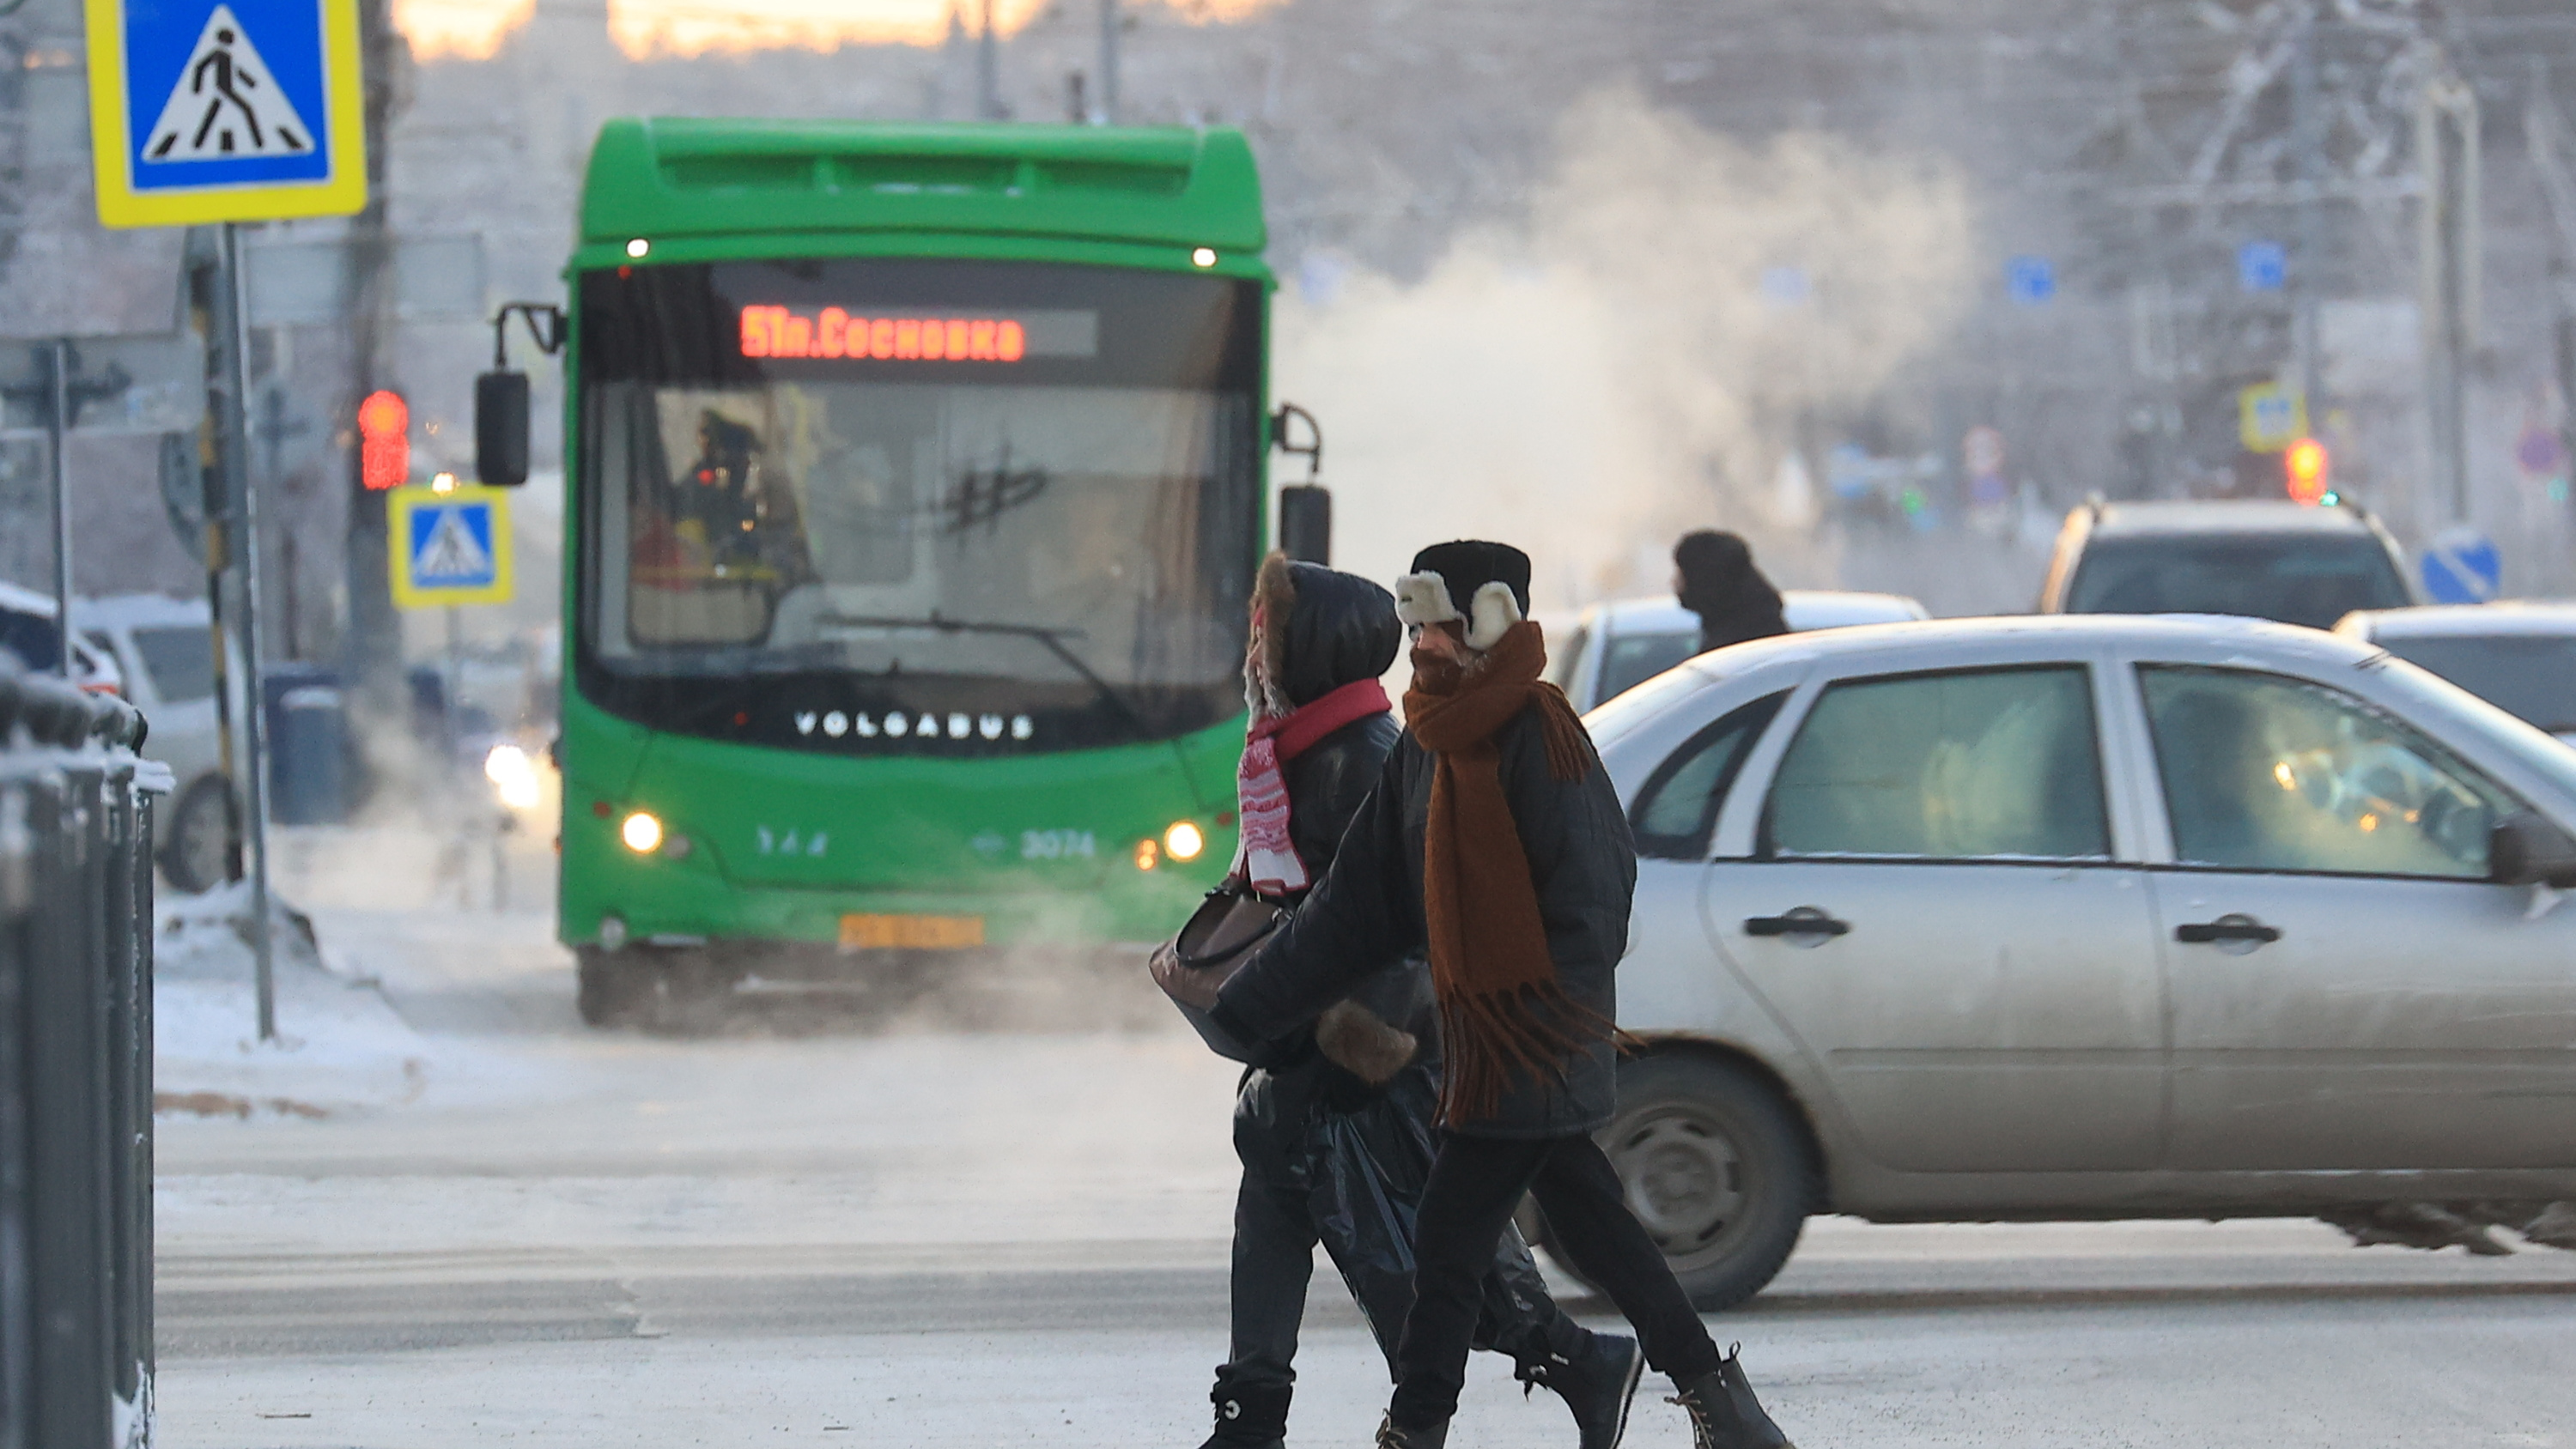 Аж стынет кровь! Как Челябинск пережил самый холодный этой зимой понедельник: онлайн-репортаж